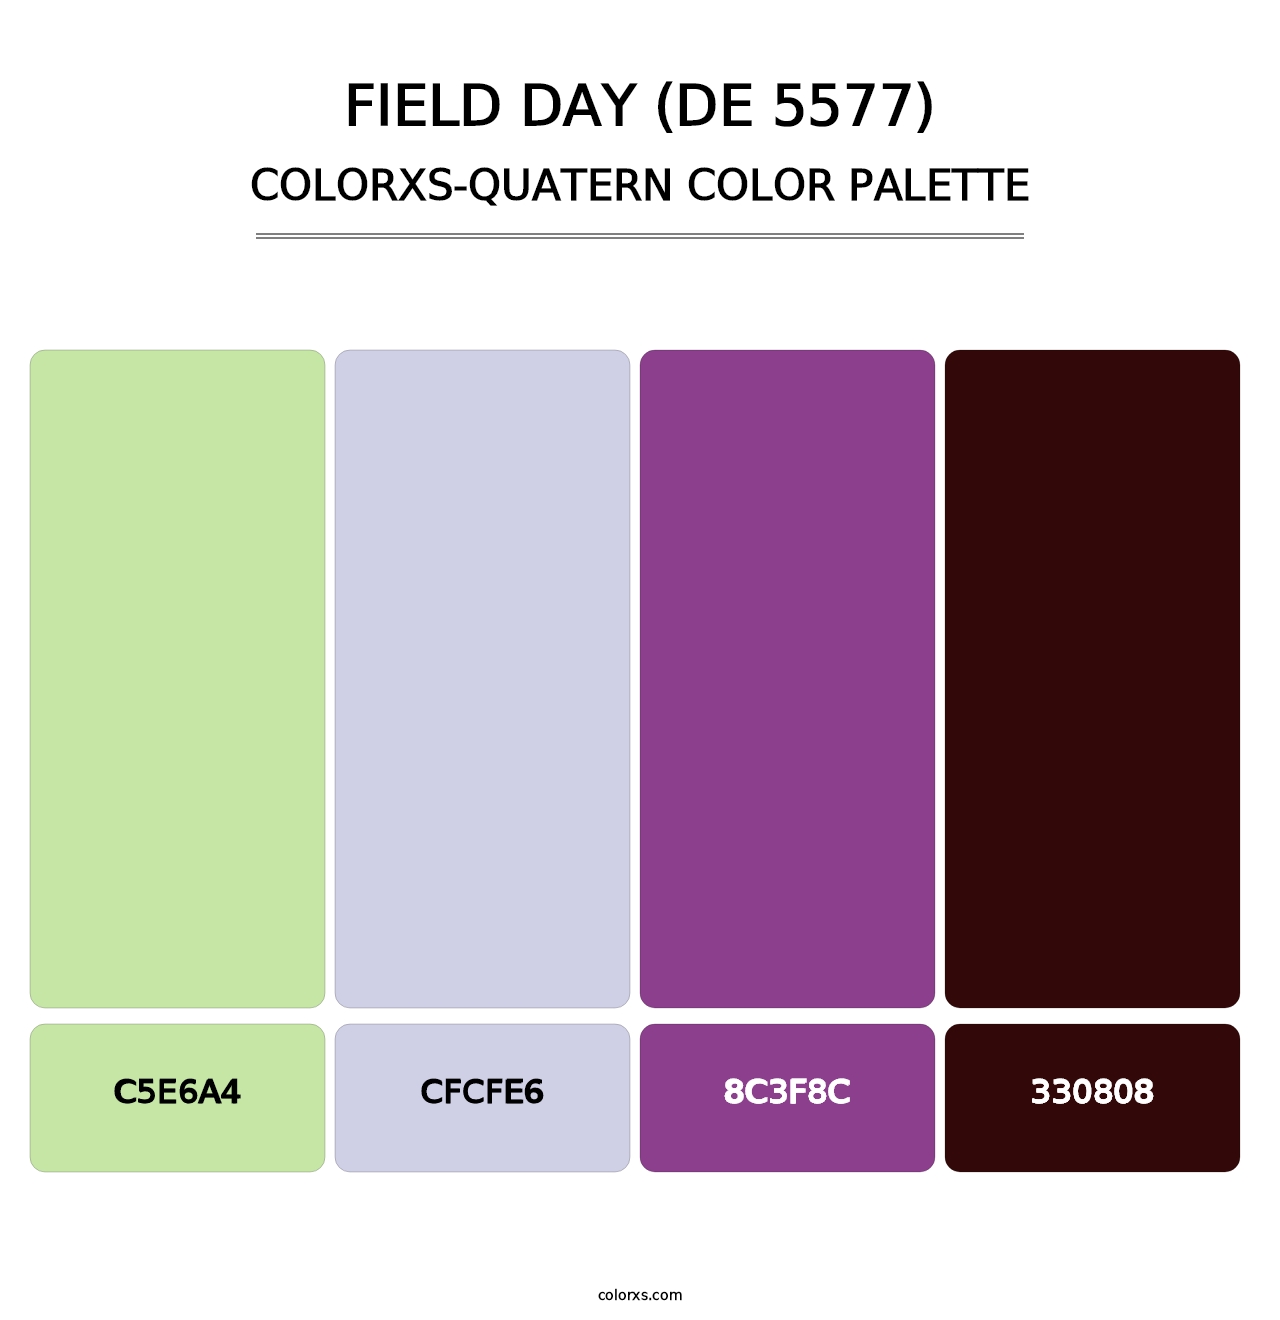 Field Day (DE 5577) - Colorxs Quatern Palette